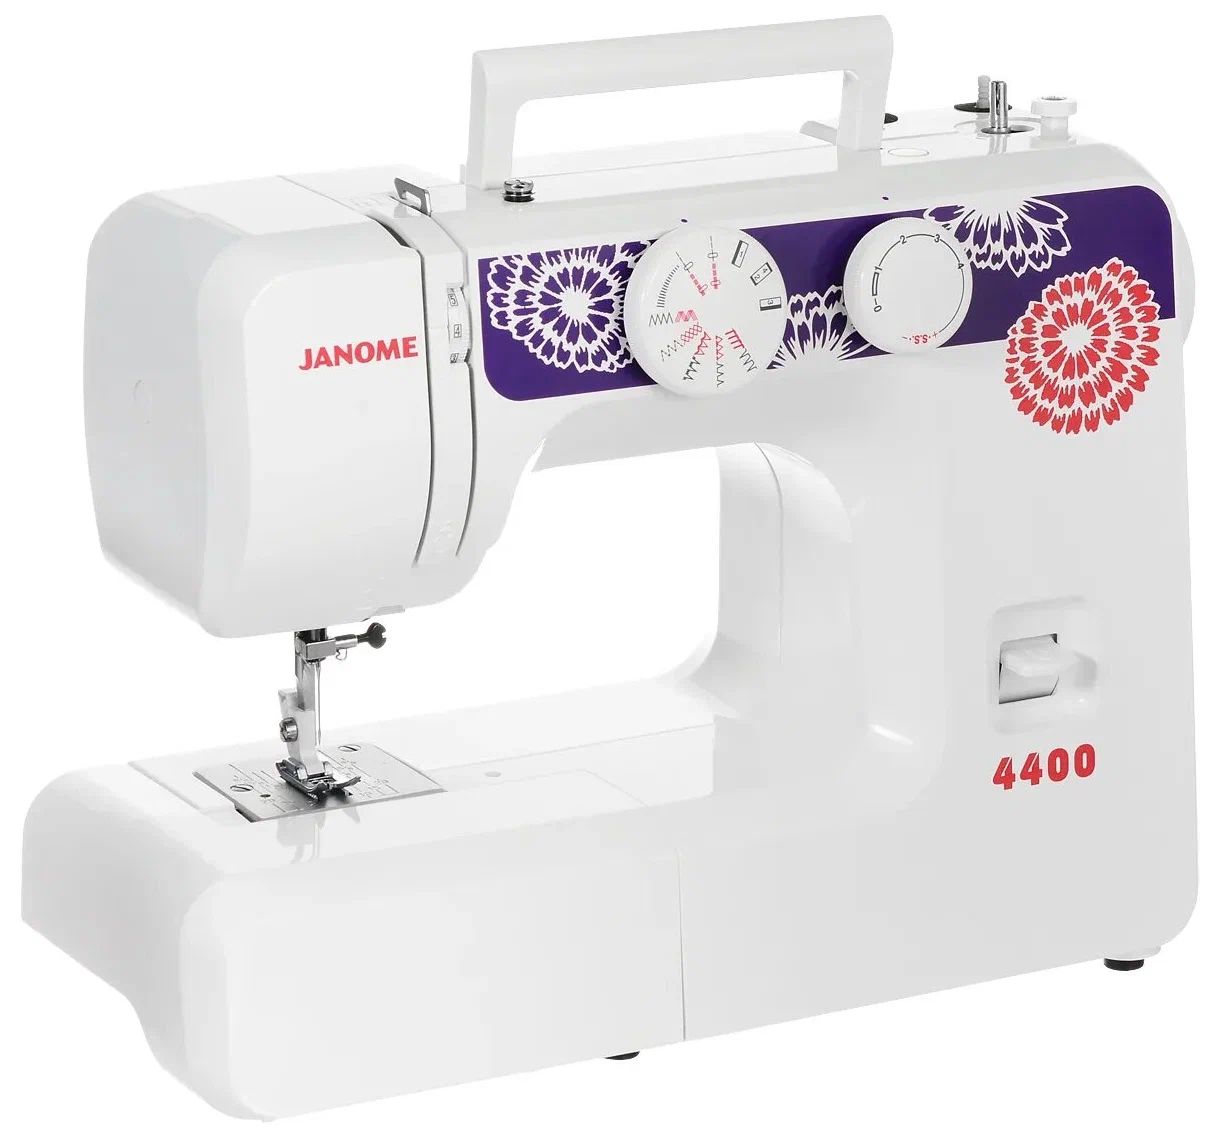 Швейная машина Janome 4400 белый, фиолетовый швейная машина janome 419s белый фиолетовый